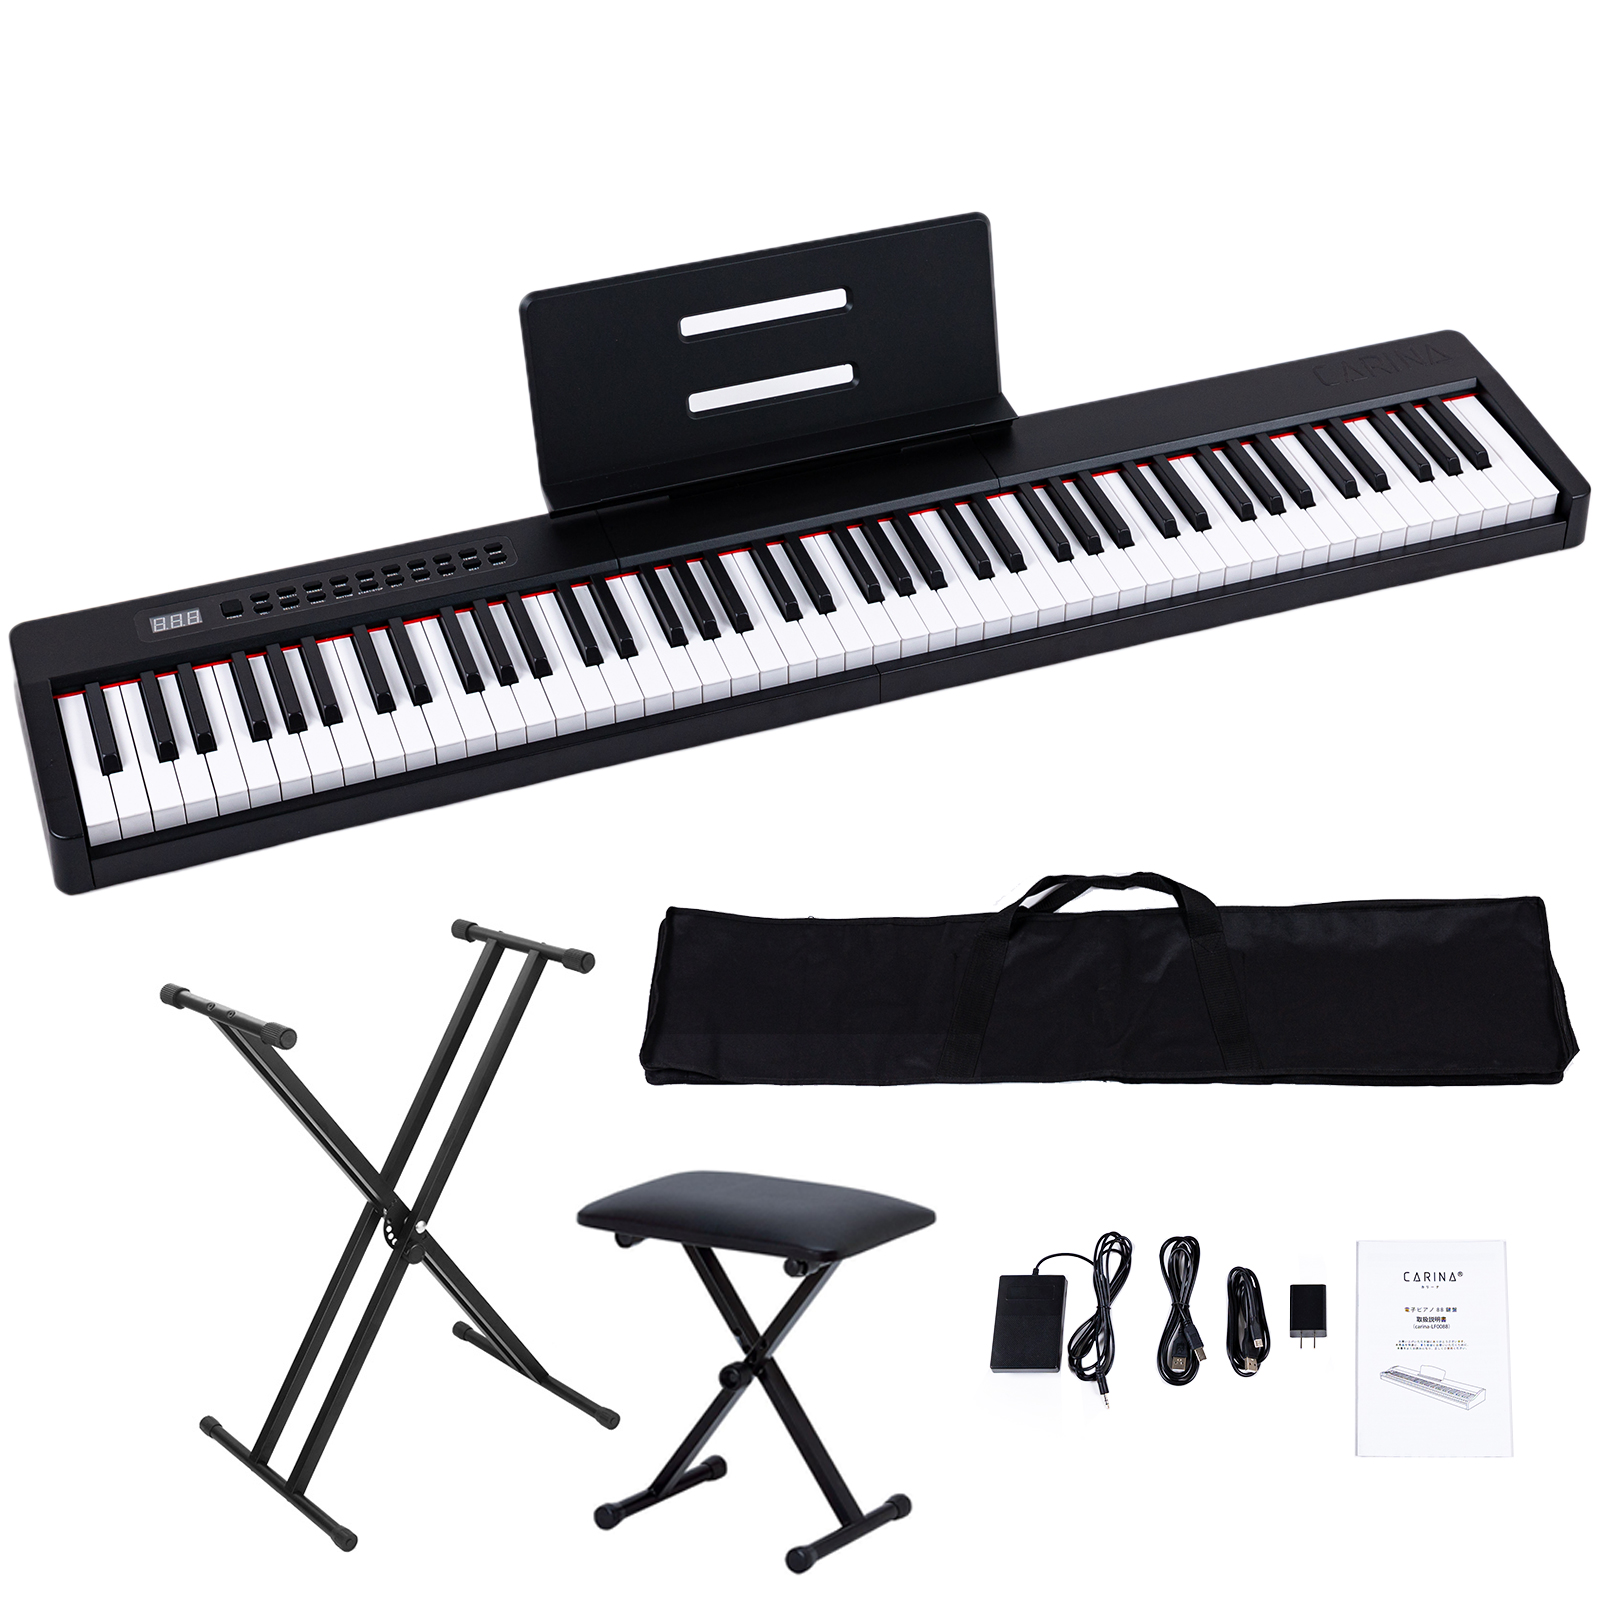 【4カラー】電子ピアノ 88鍵盤 スタンド 椅子セット dream音源 充電可能 日本語操作ボタン 軽量 キーボード コードレス スリム 軽い  MIDI対応 新学期 新生活